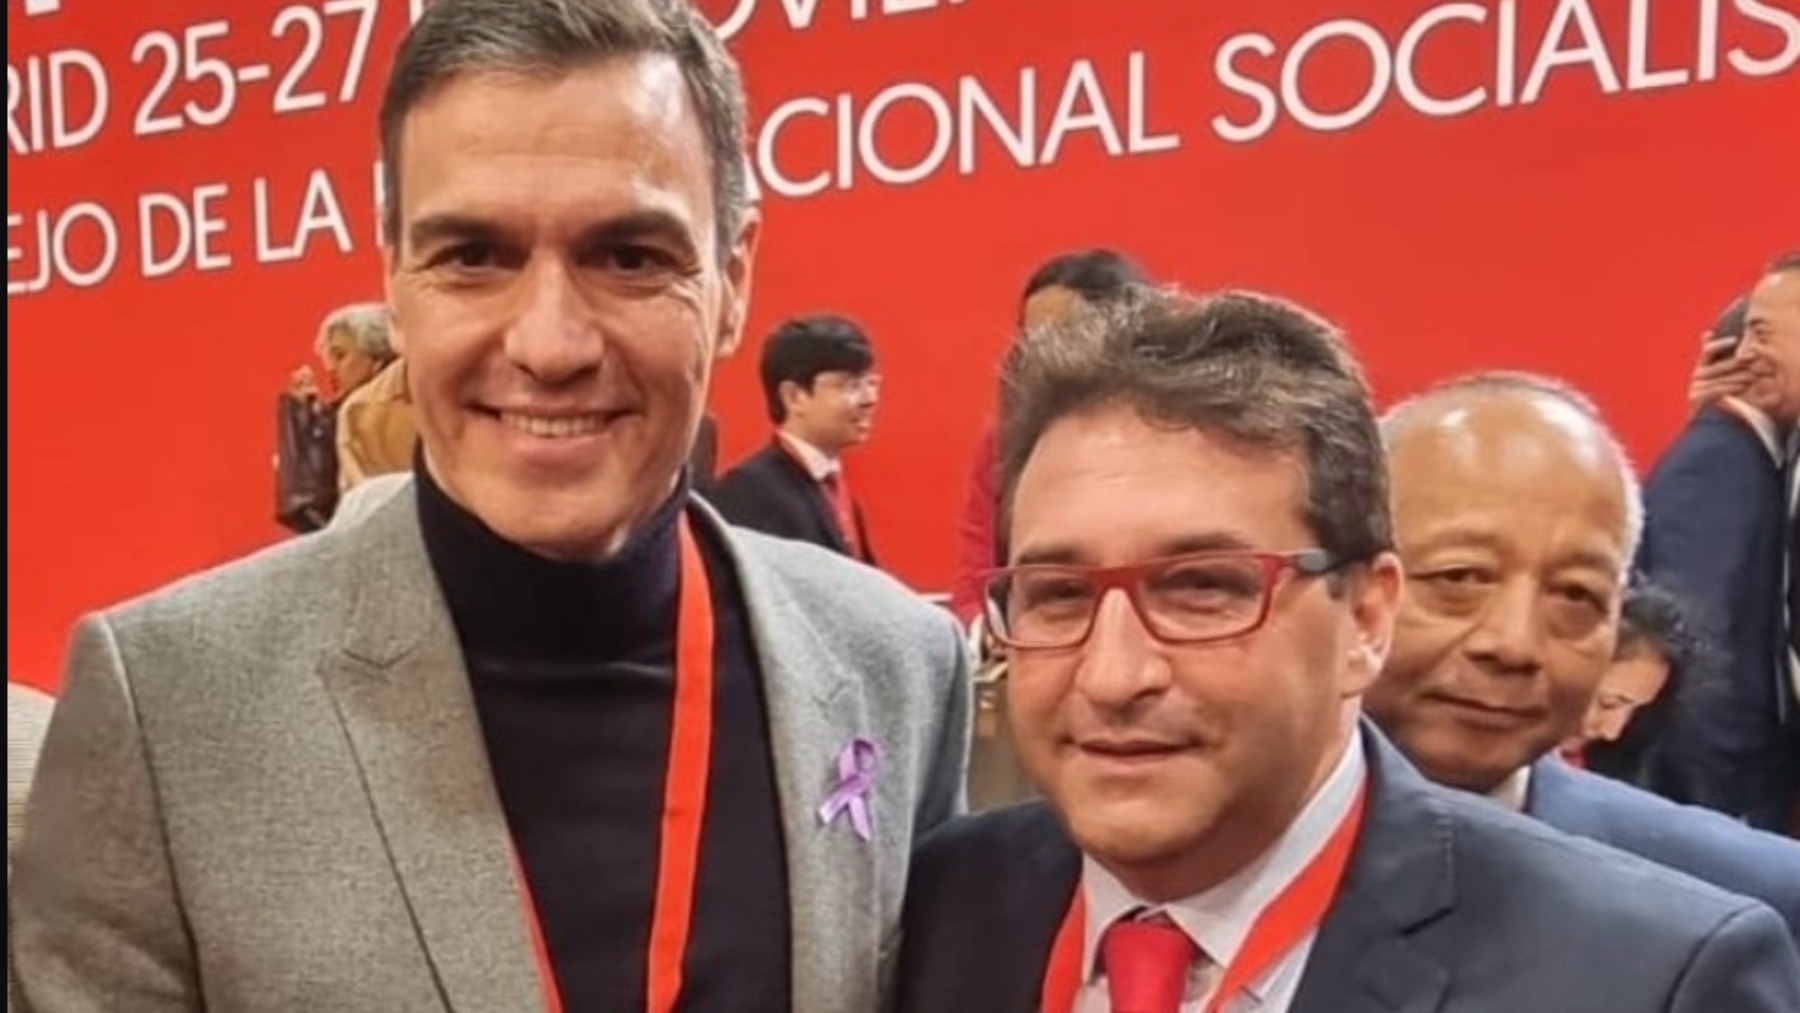 Pedro Sánchez con el socialista marroquí Machij el Karkri.